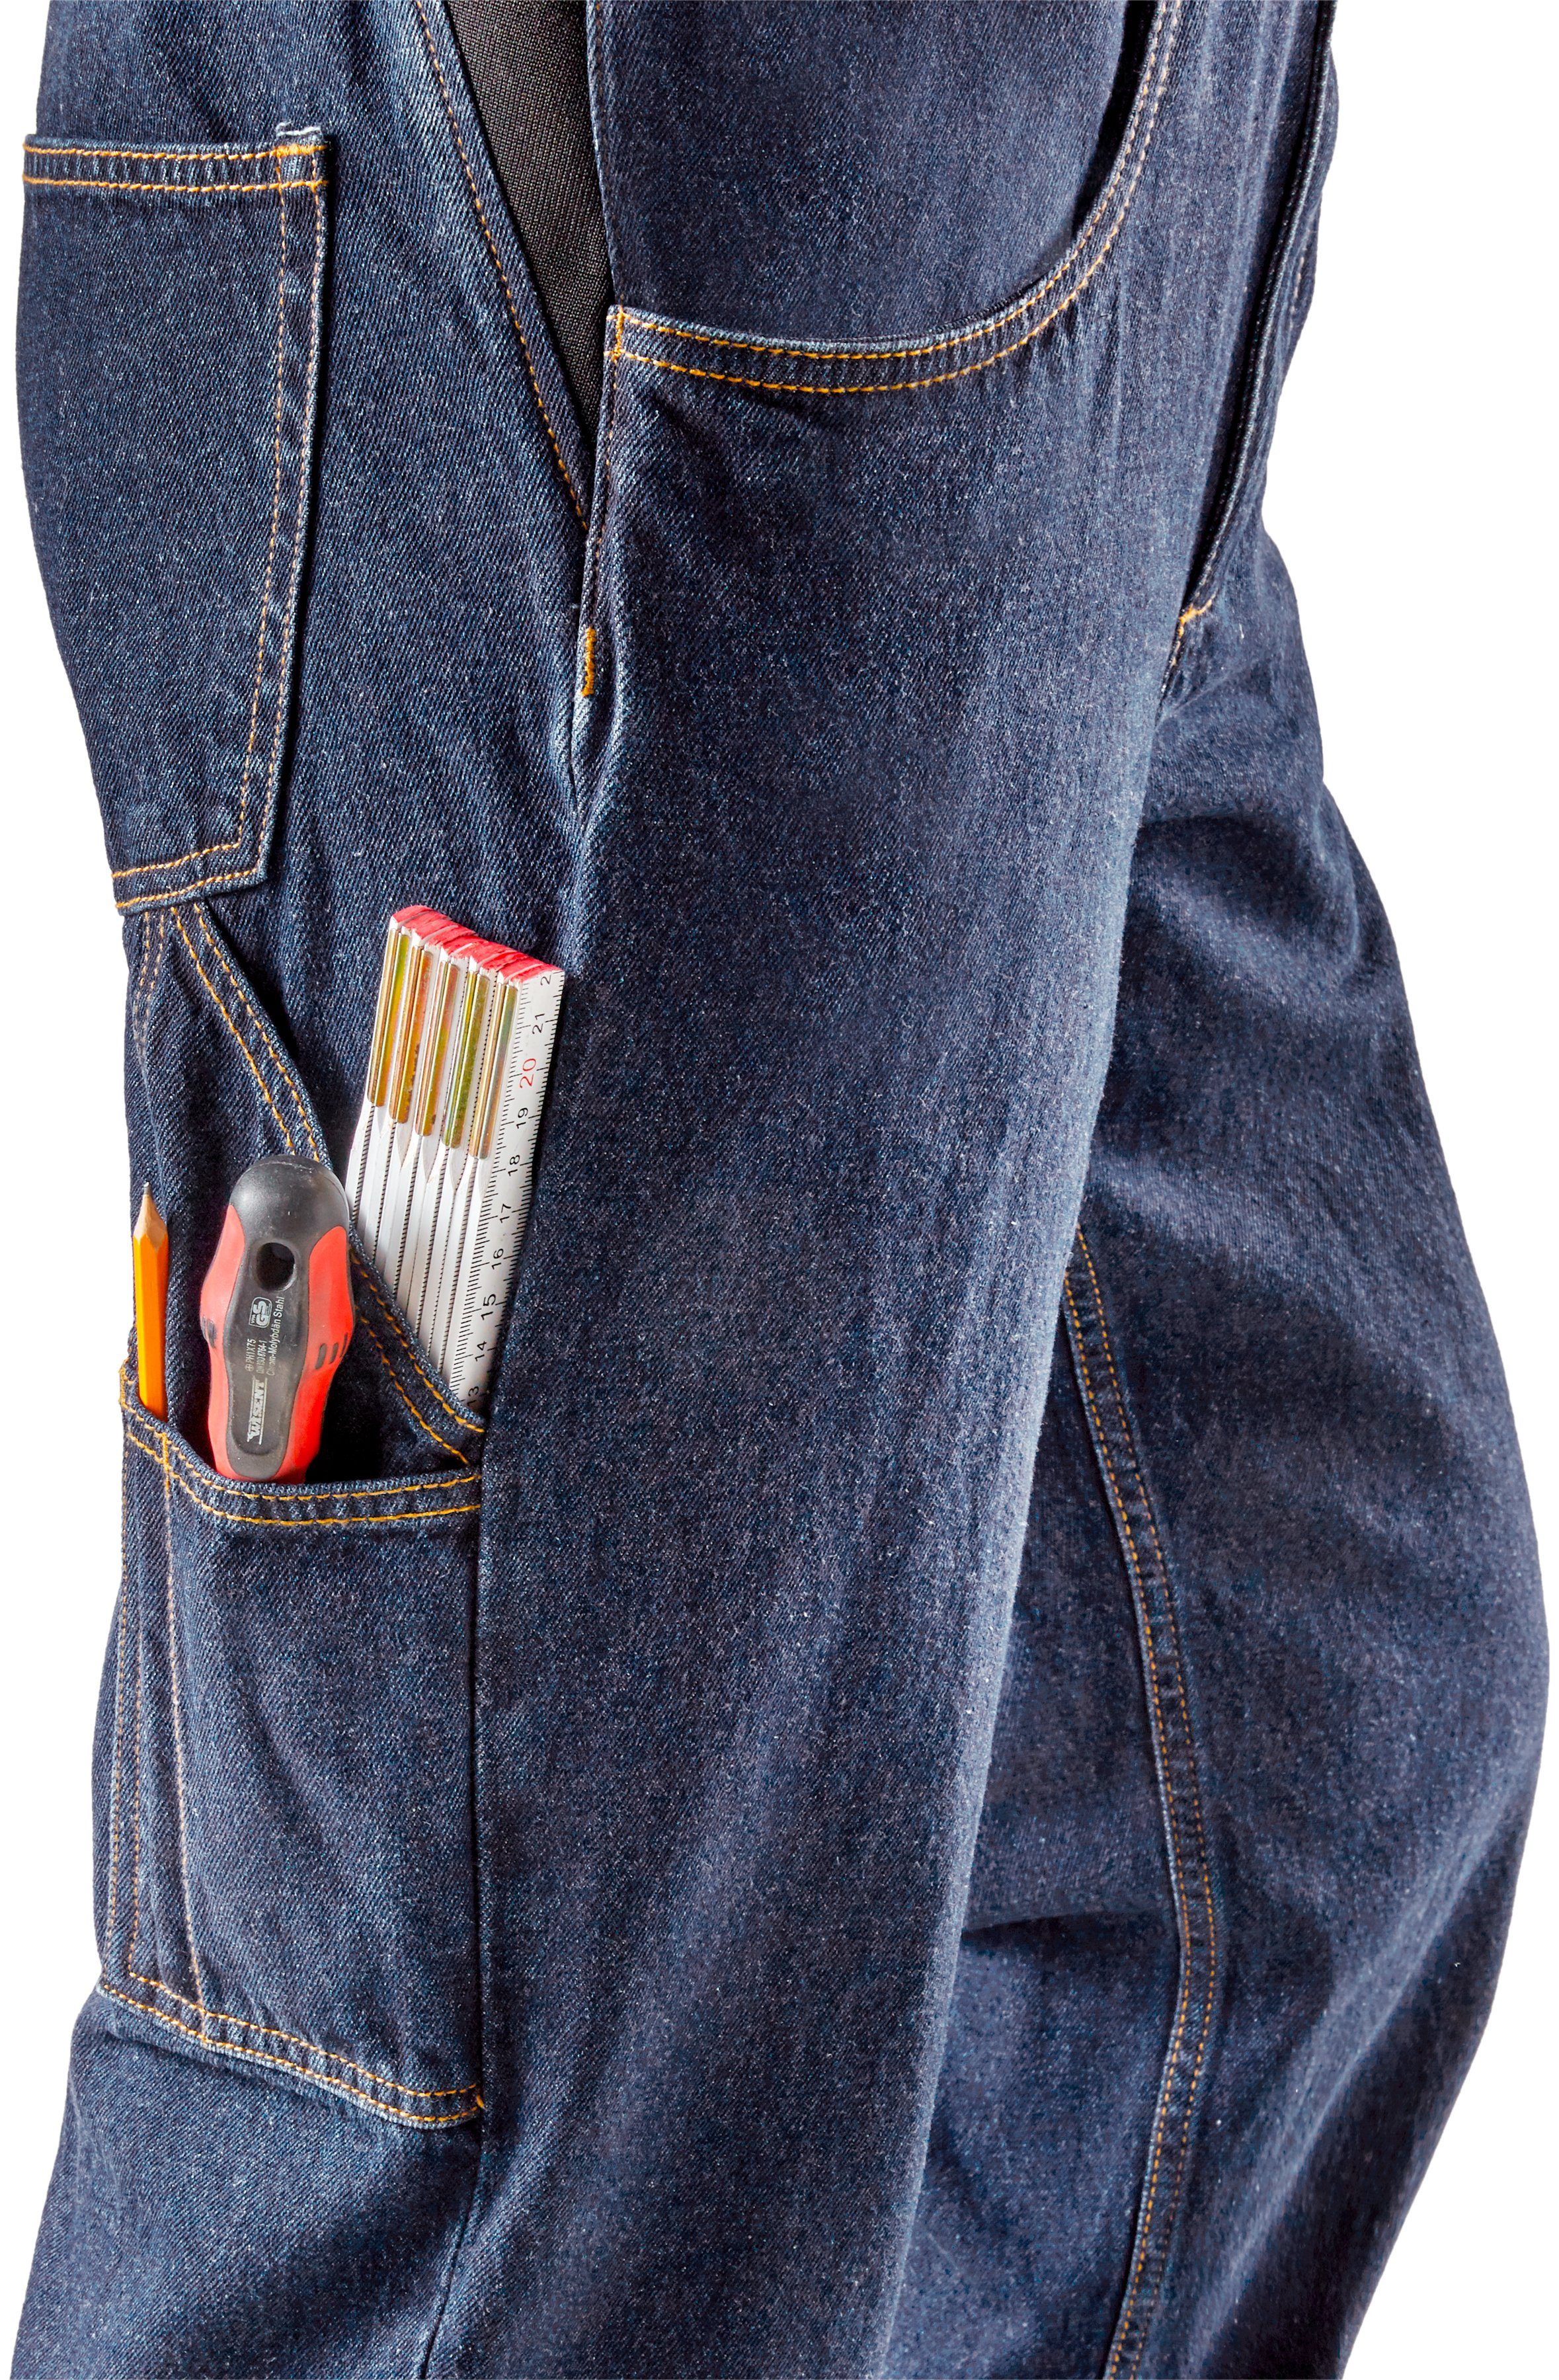 Country robuster Jeans (aus Latzhose Taschen, 11 dehnbarem Northern mit und Worker langlebig fit) Baumwolle, Bund, strapazierfähig 100% comfort Jeansstoff,